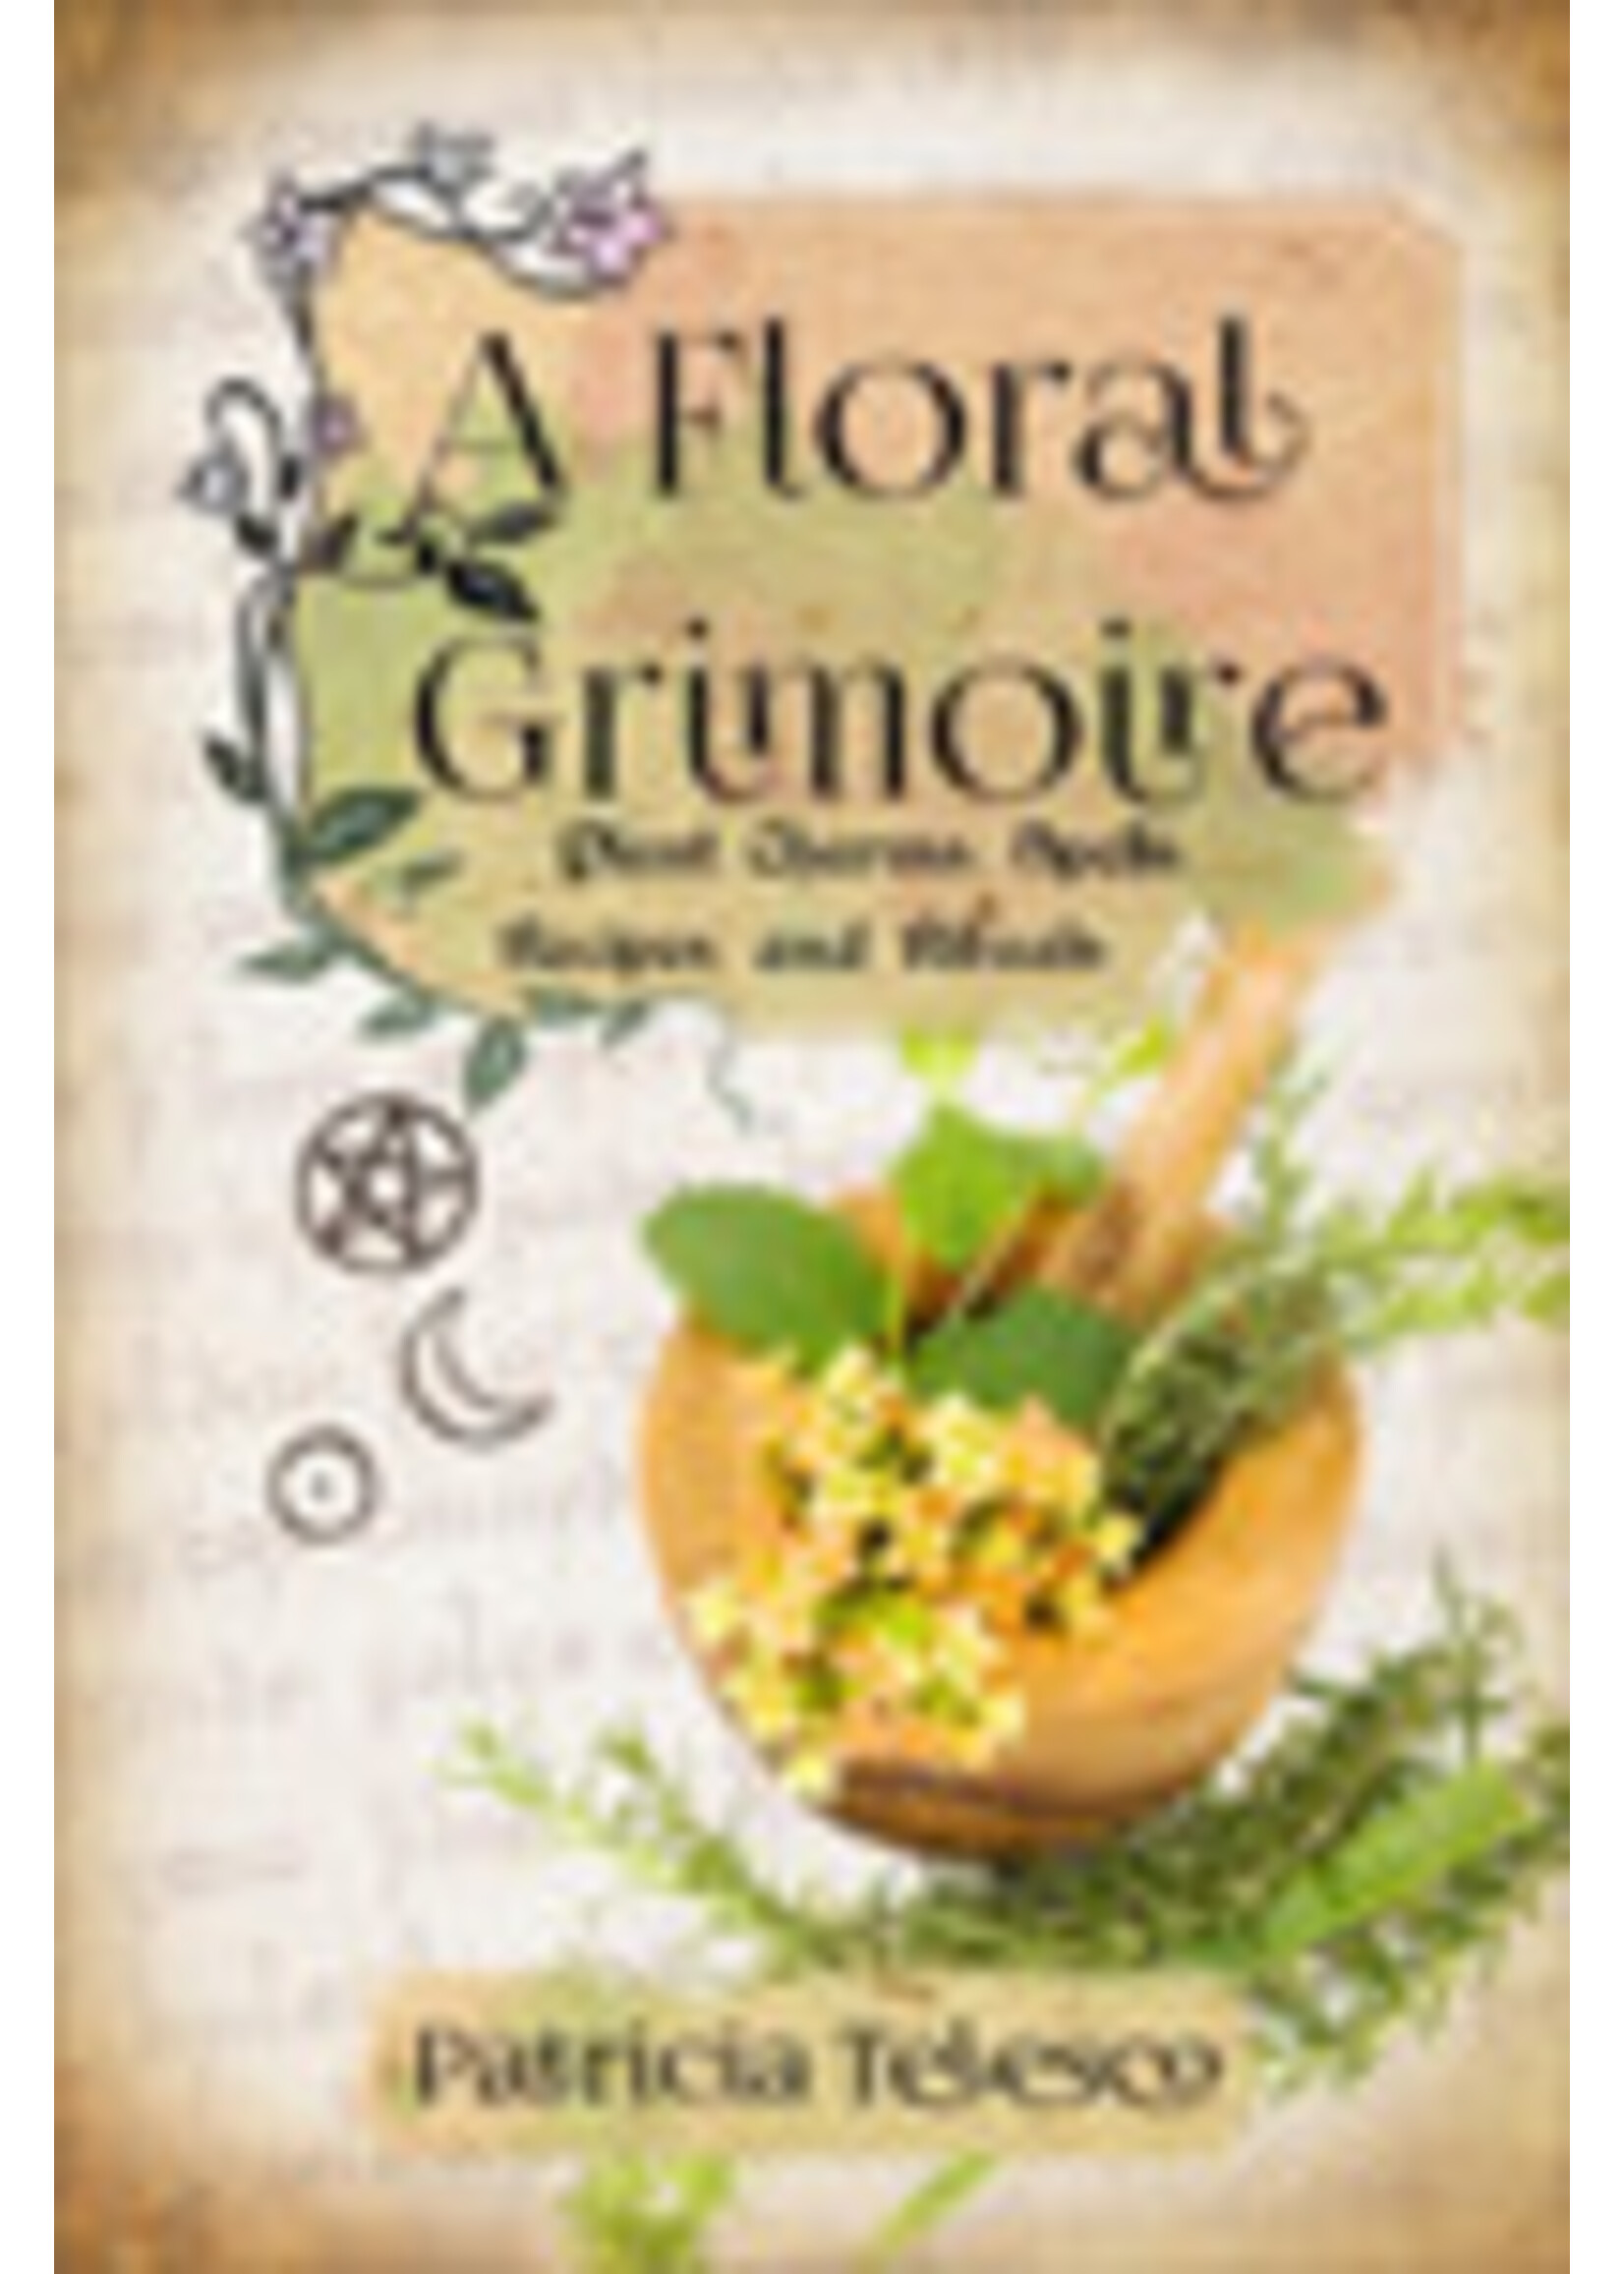 Floral Grimoire